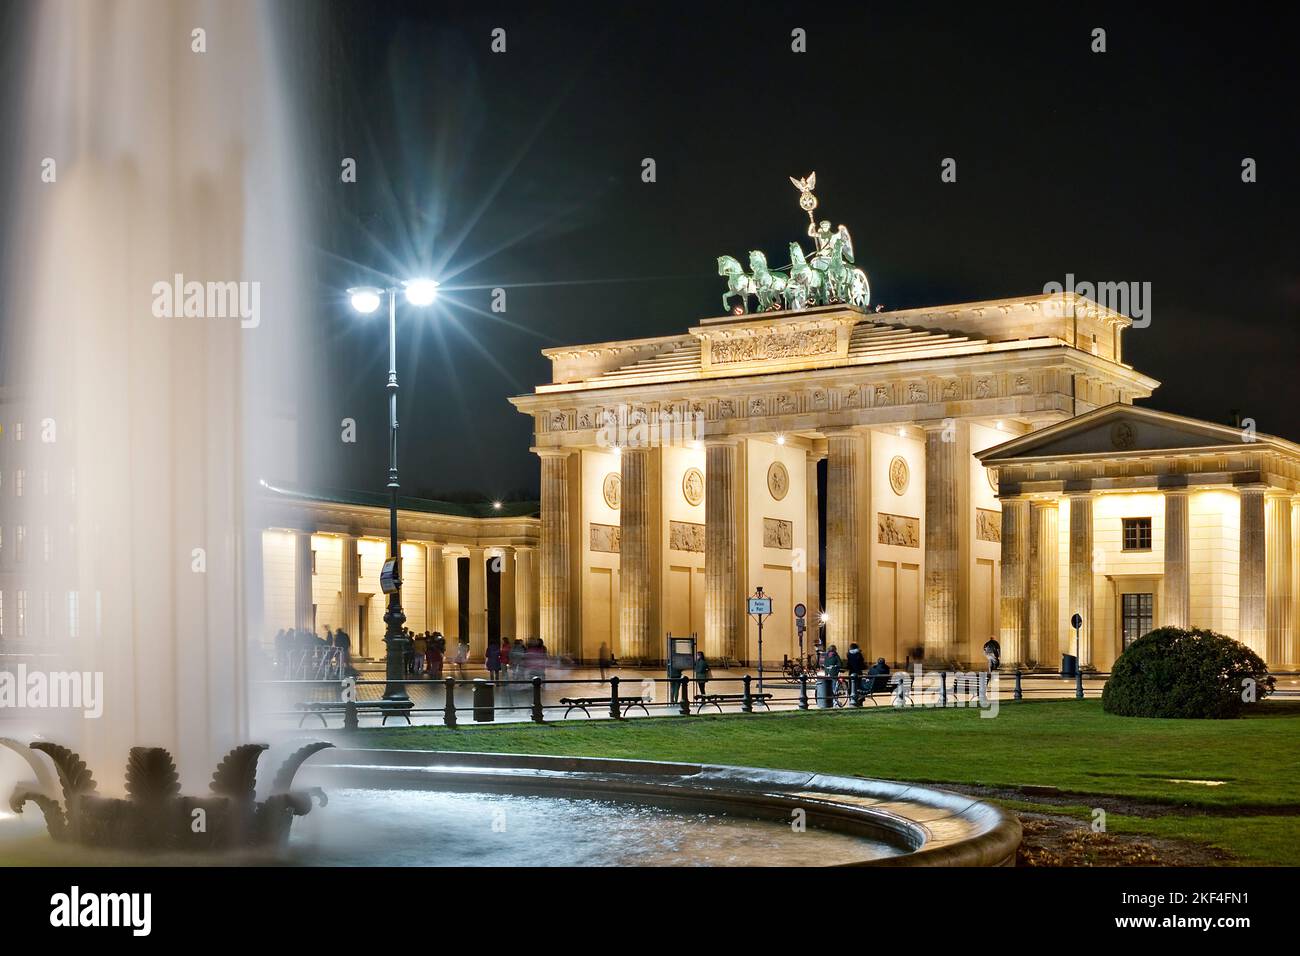 Das Brandenburger Tor mit der Quadriga bei Nacht, Berlin, Brunnen, Wasserfontäne, Springbrunnen am Pariser Platz, beleuchtet, Stock Photo